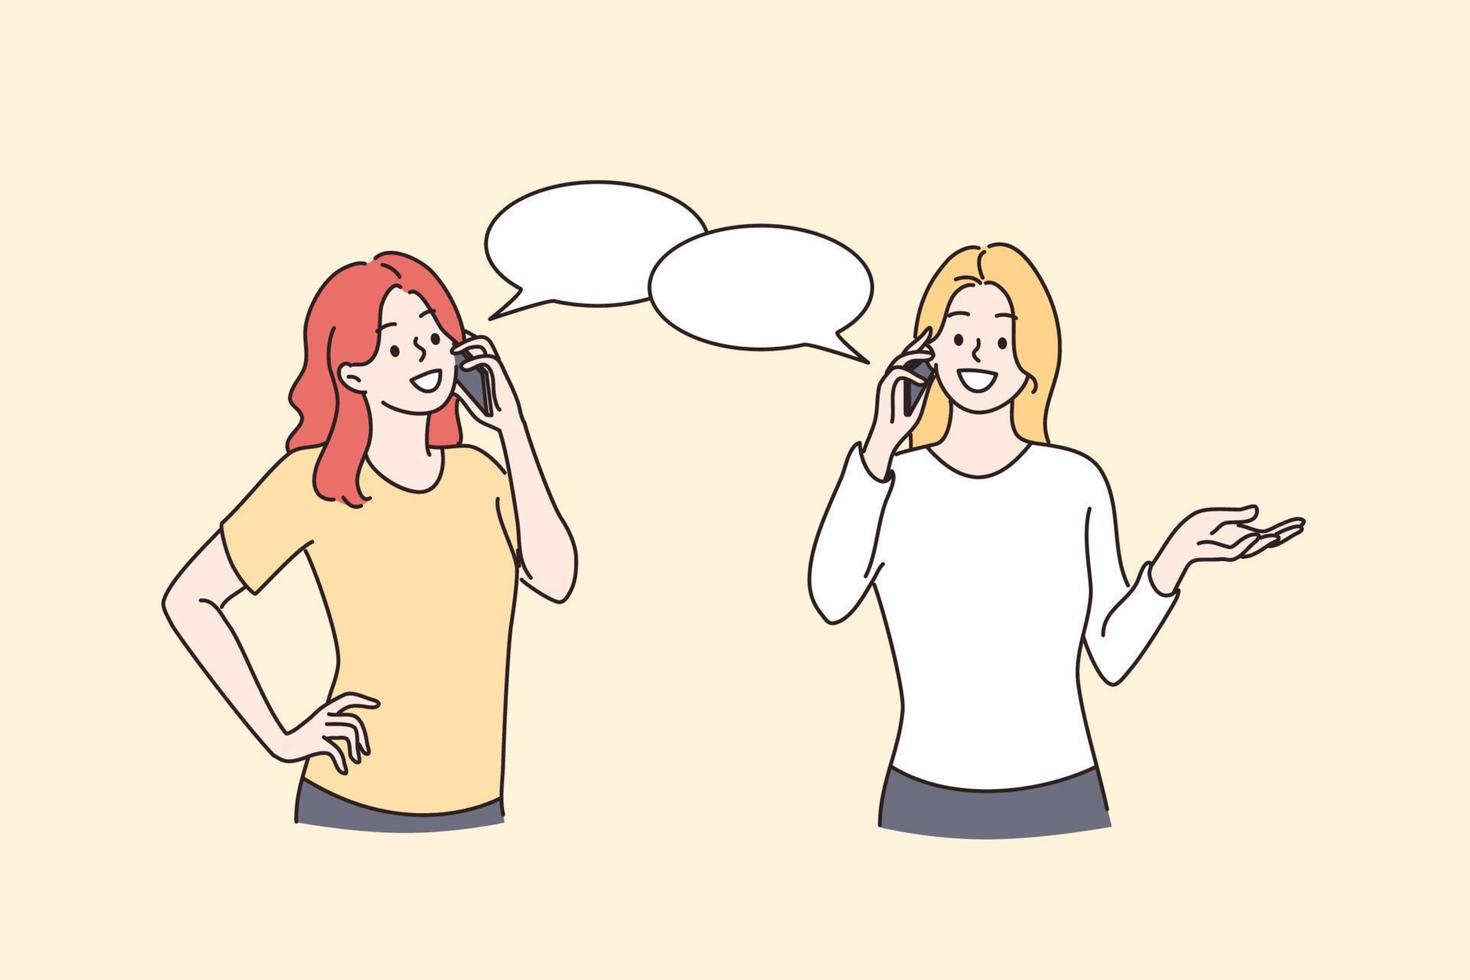 Telefongespräch, Kommunikation, Chat-Konzept. zwei junge positive freundinnen, die einen gesprächshandydialog führen, der über sachen vektorillustration plaudert vektor